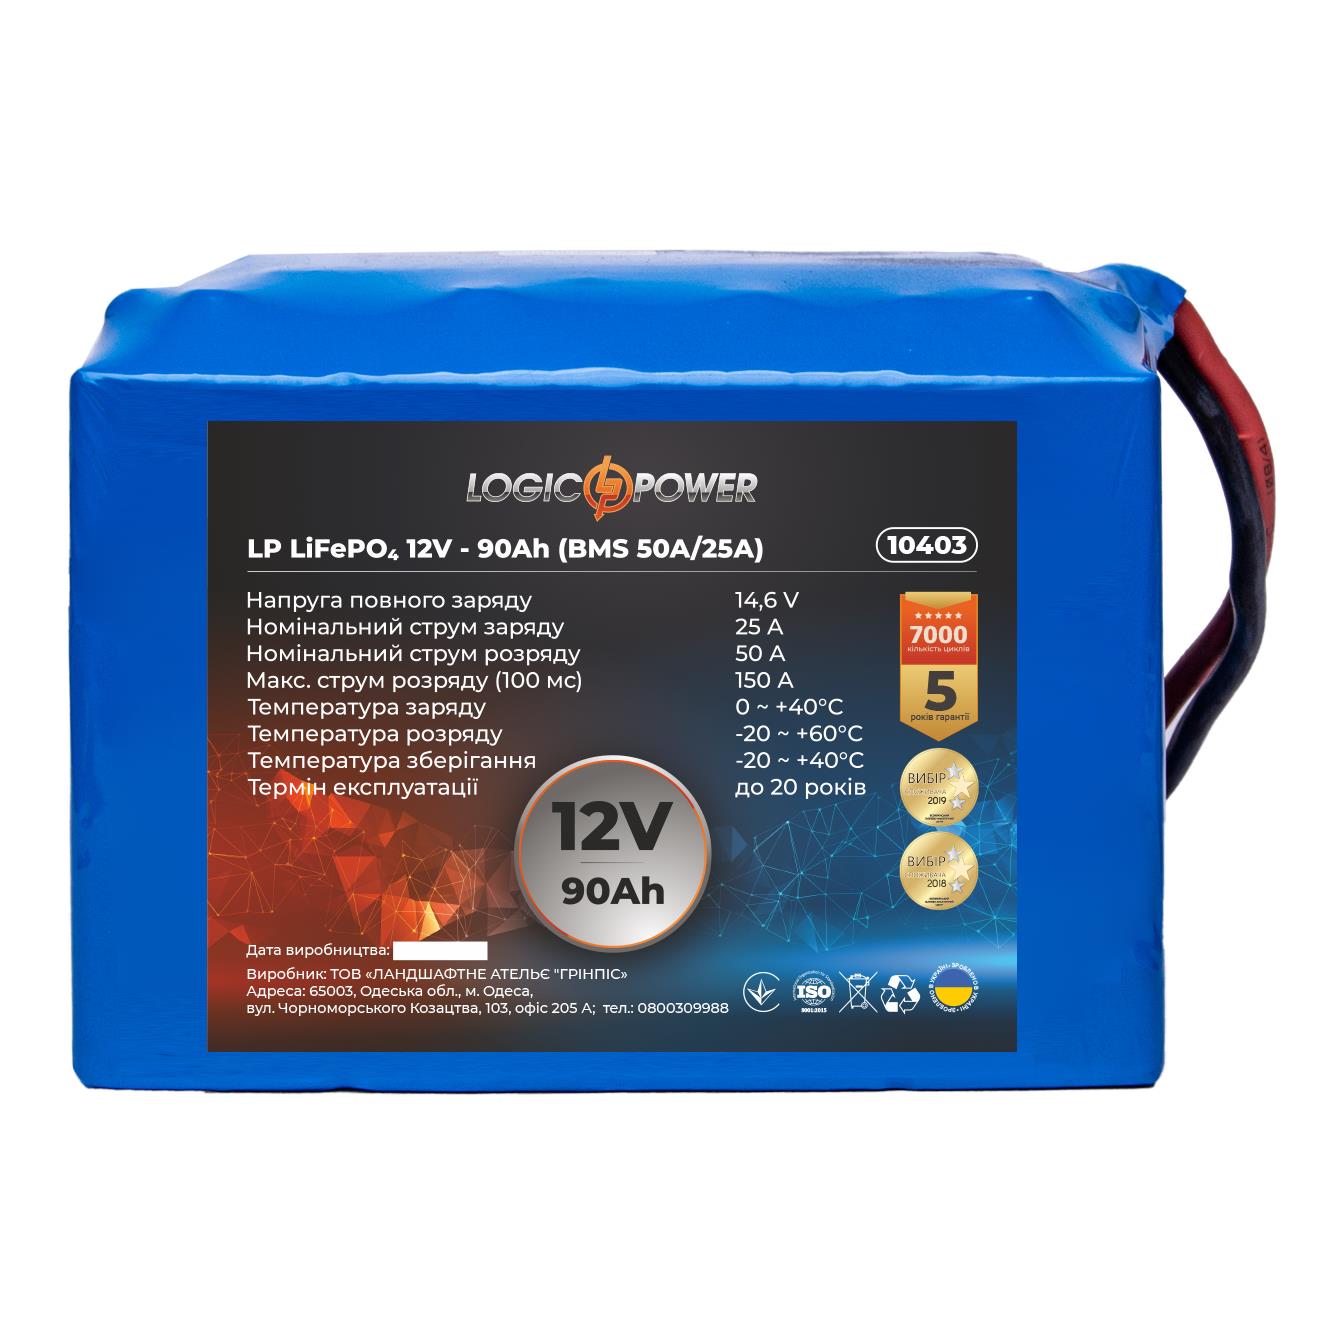 Аккумулятор литий-железо-фосфатный LogicPower LP LiFePO4 12V - 90 Ah (BMS 50A/25A) (10403) в интернет-магазине, главное фото